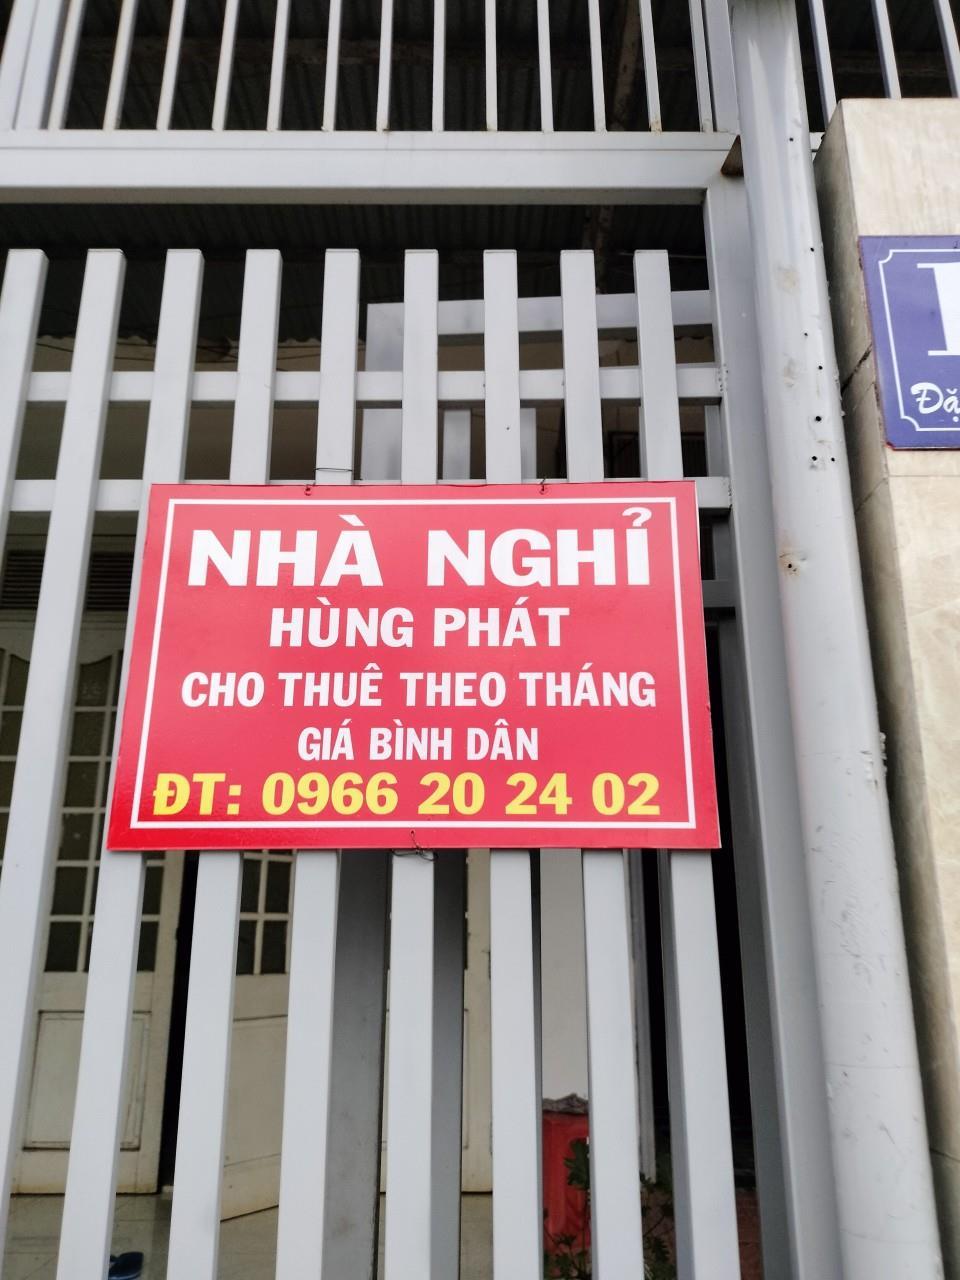 NHÀ NGHỈ HÙNG PHÁT Tại TP Buôn Ma Thuột Cho Thuê Phòng Theo GIỜ, NGÀY, THÁNG.405958